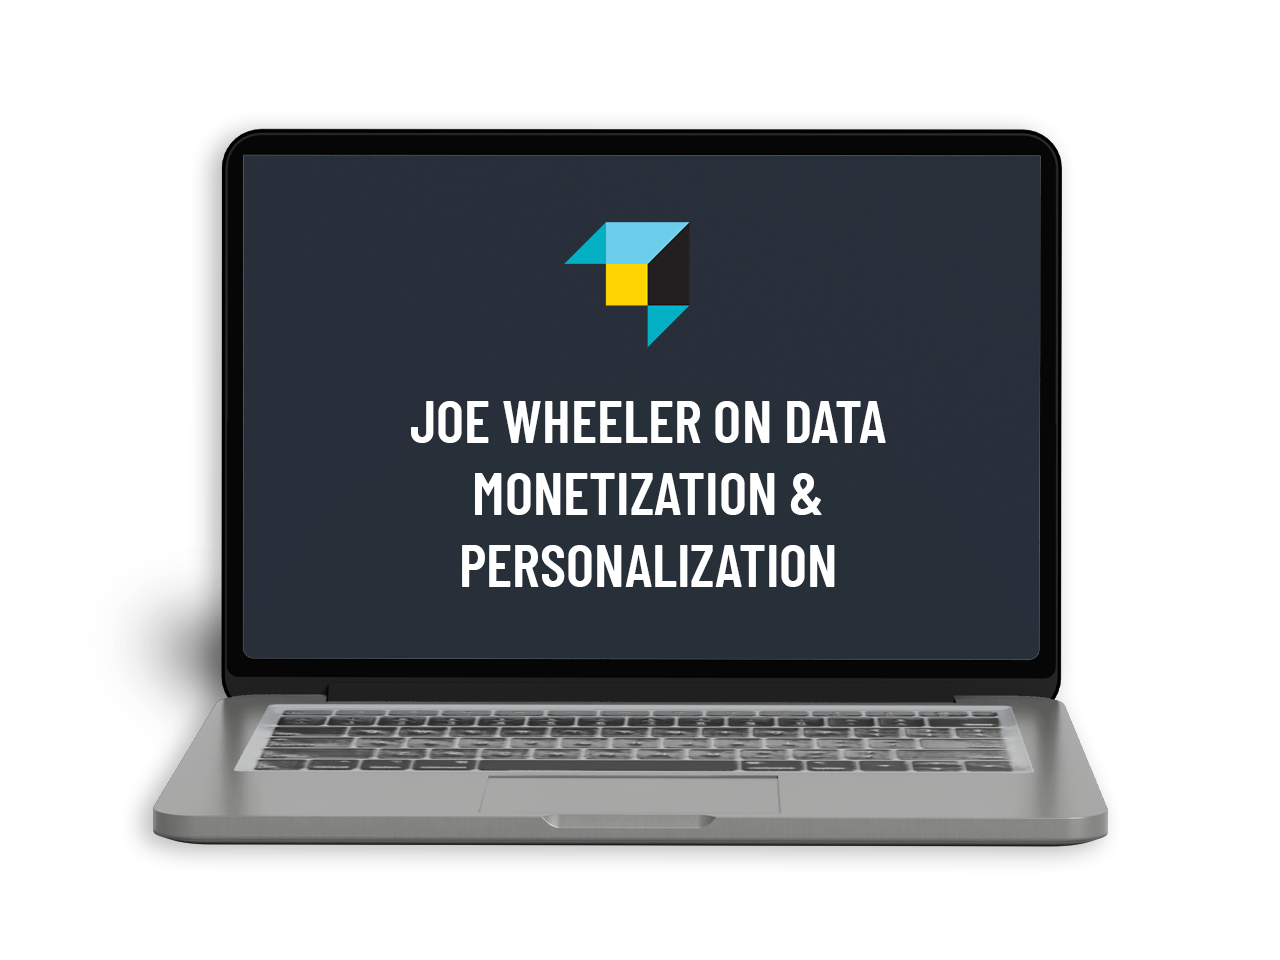 LAPTOP - Joe Wheeler On Data Monetization & Personalization